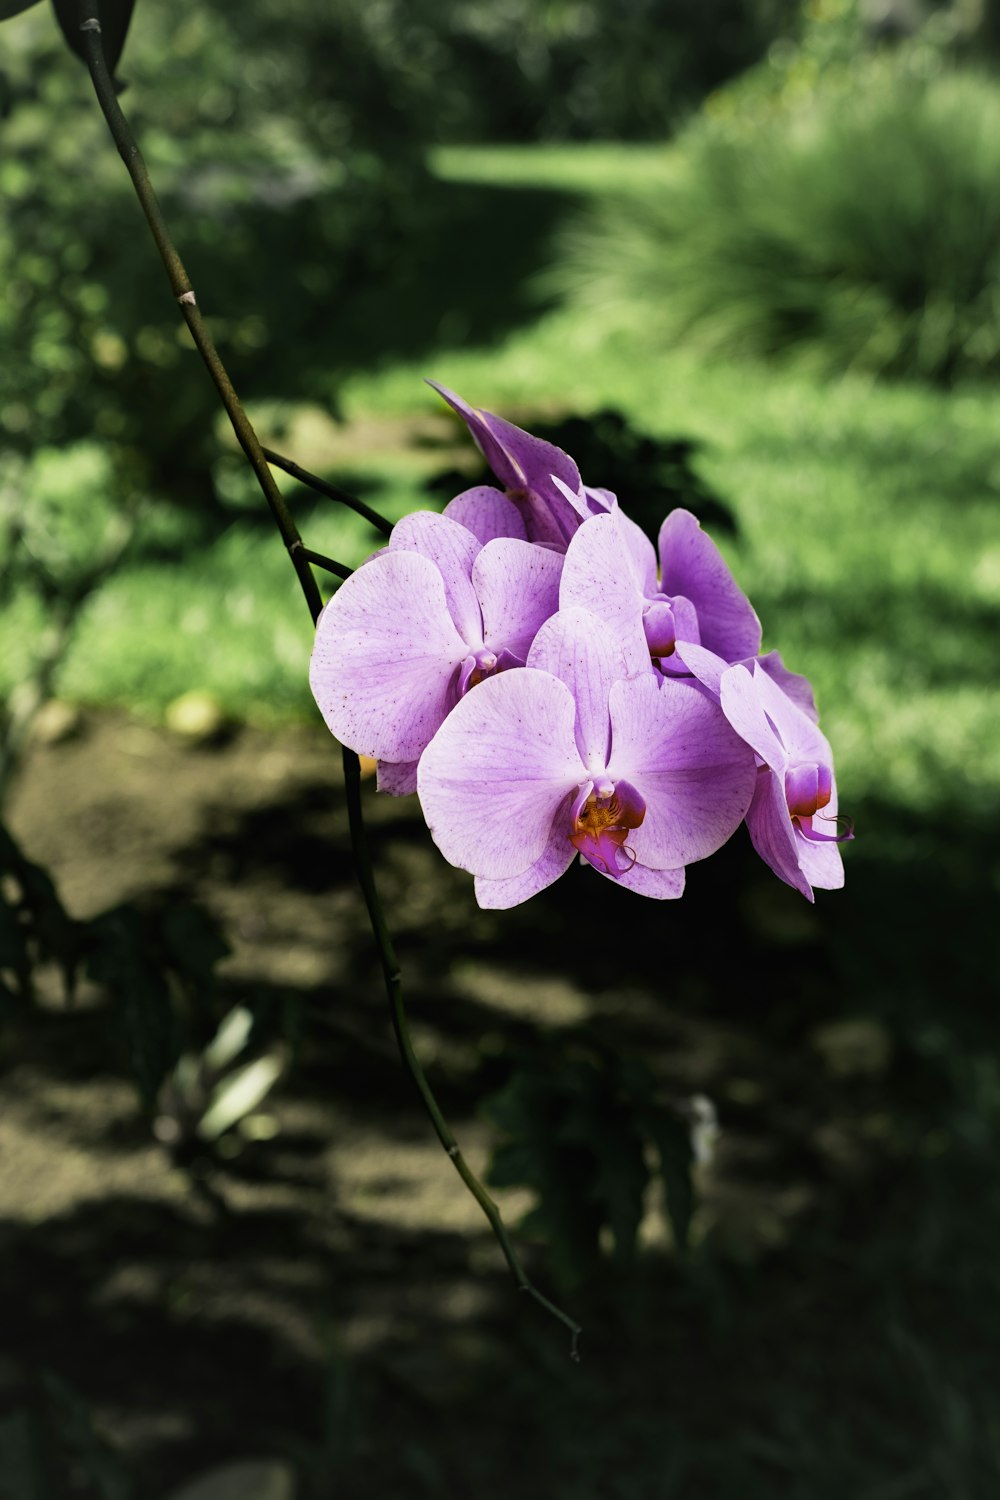 a purple flower is blooming in a garden